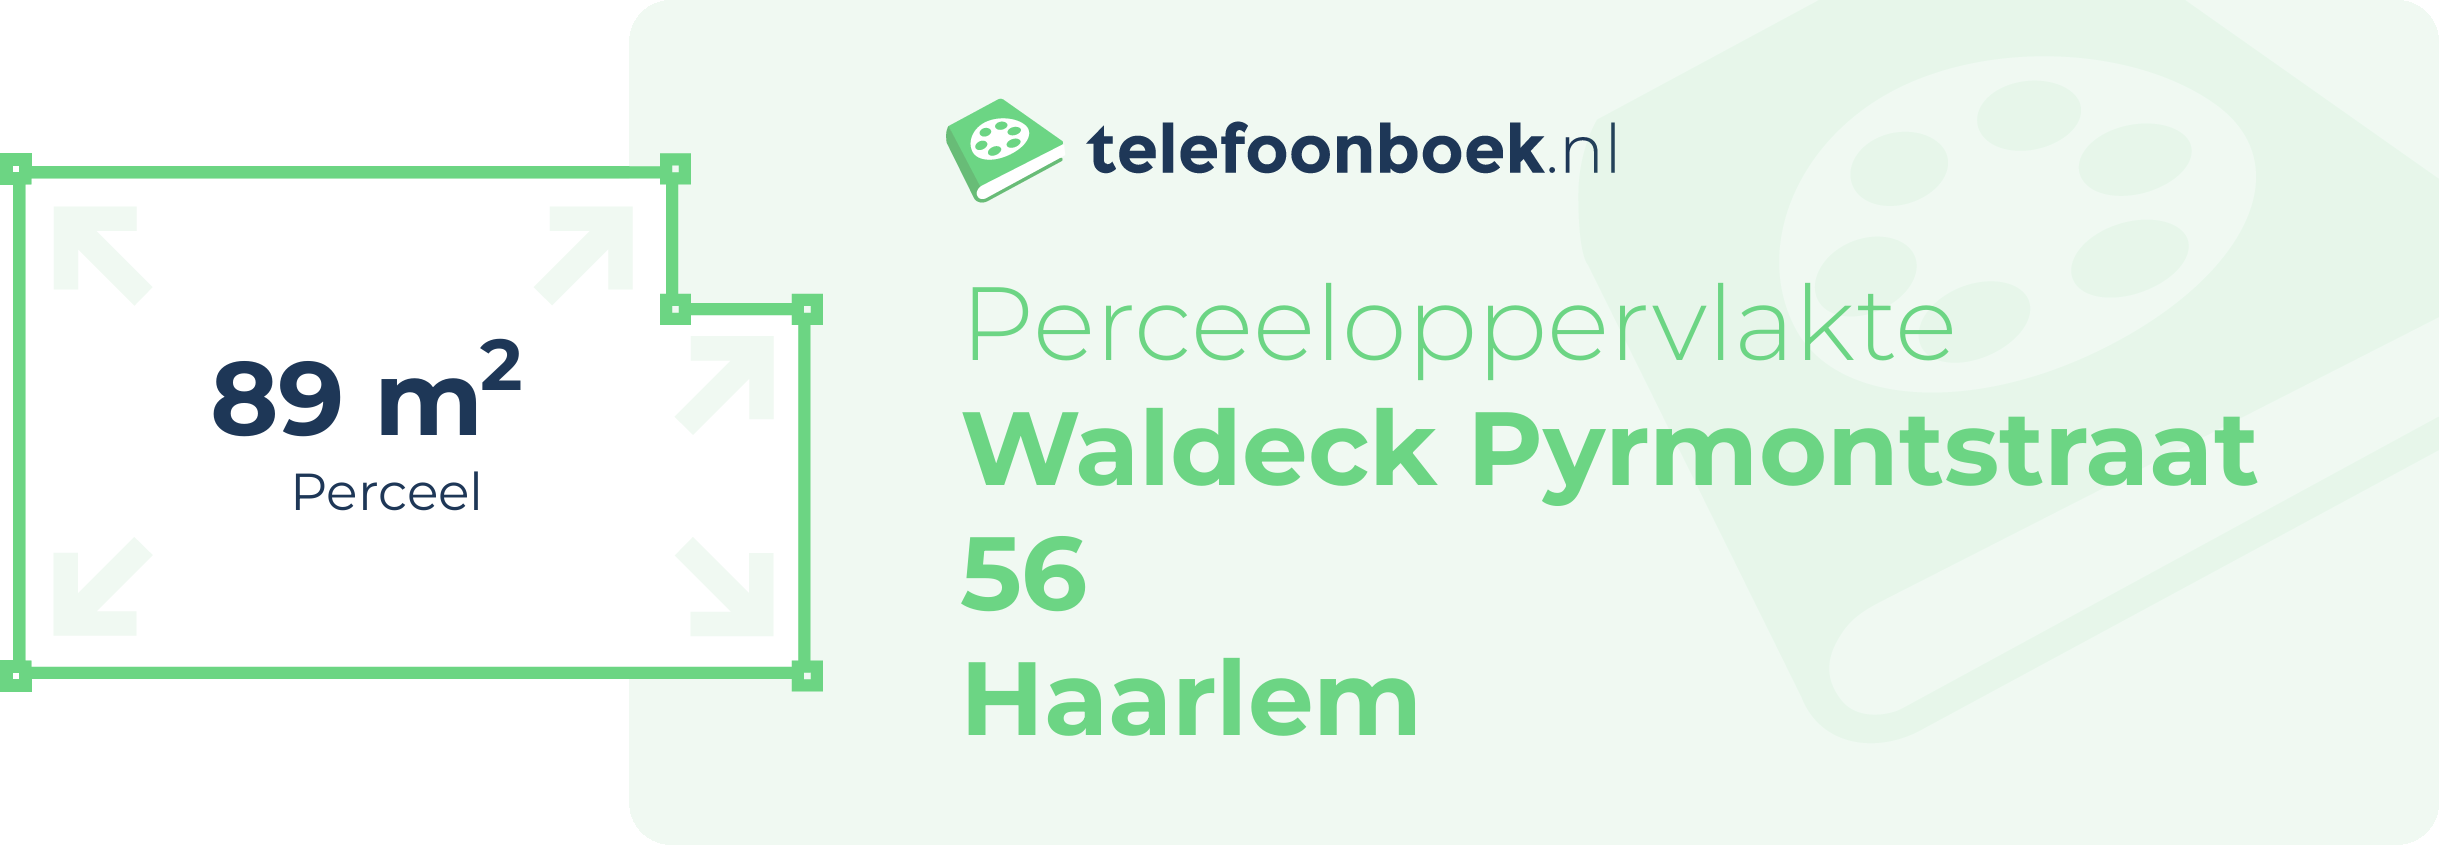 Perceeloppervlakte Waldeck Pyrmontstraat 56 Haarlem